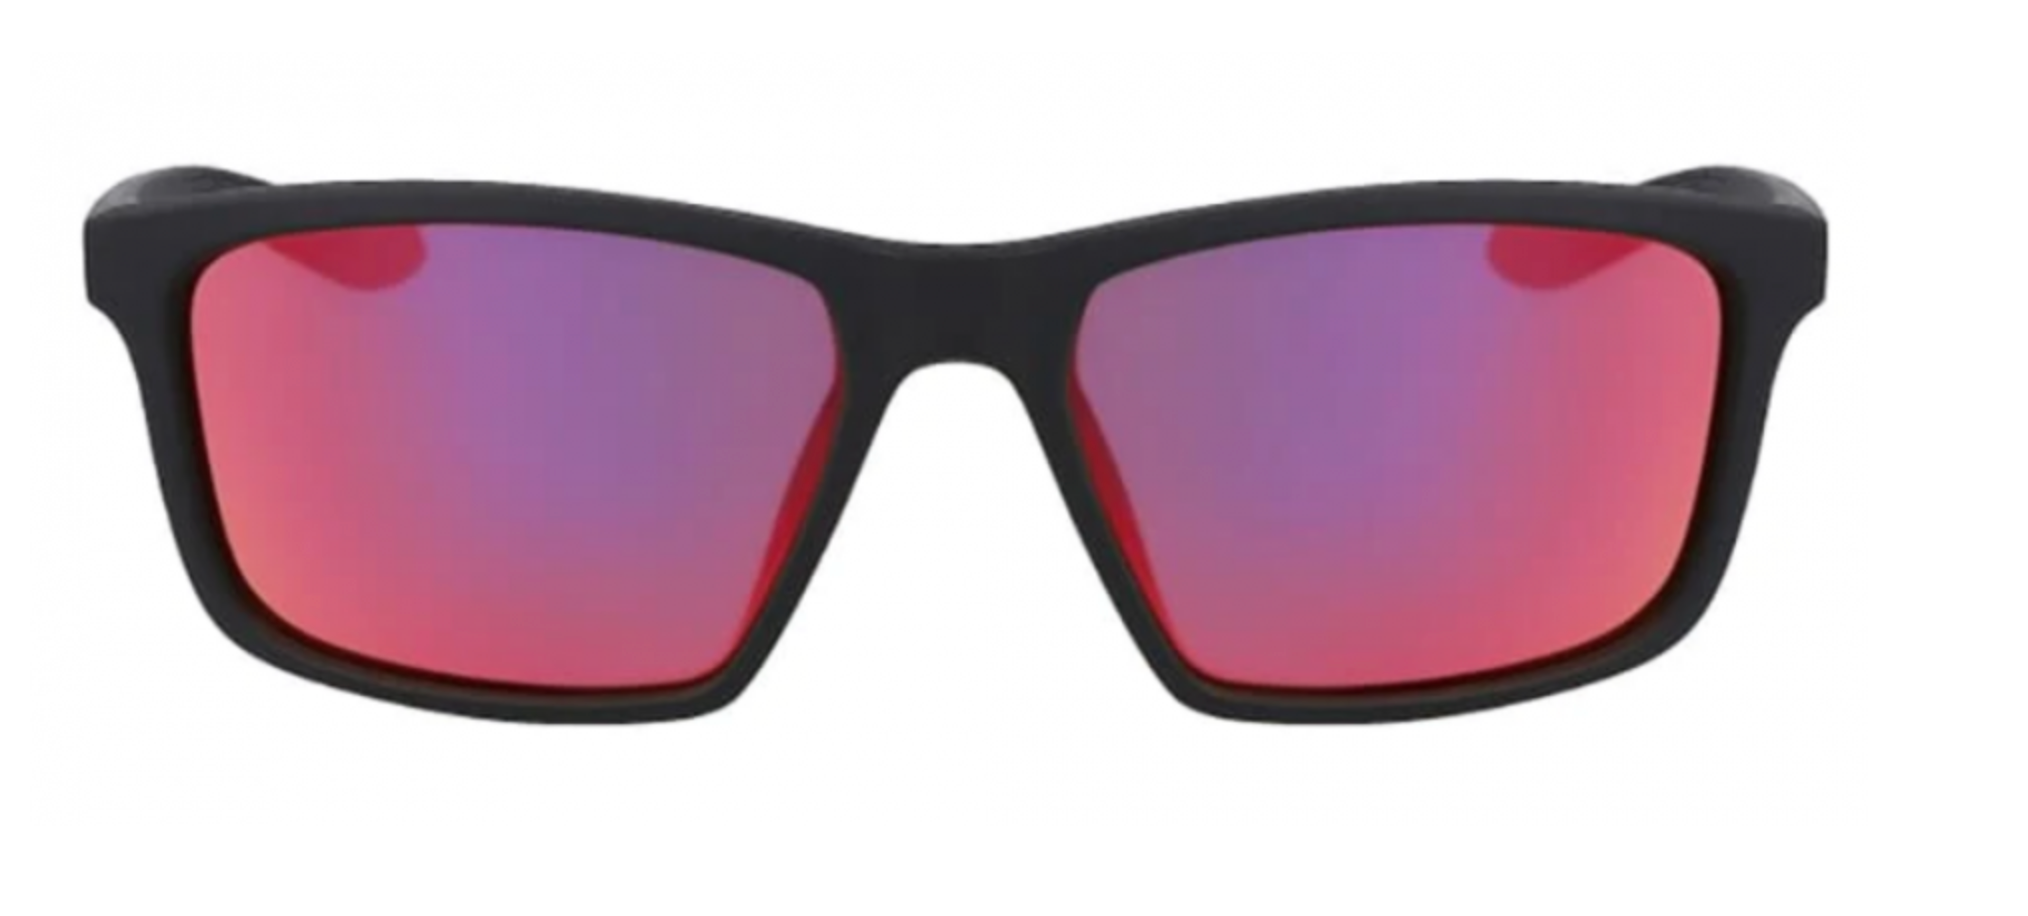 Nike Valiant Sunglasses